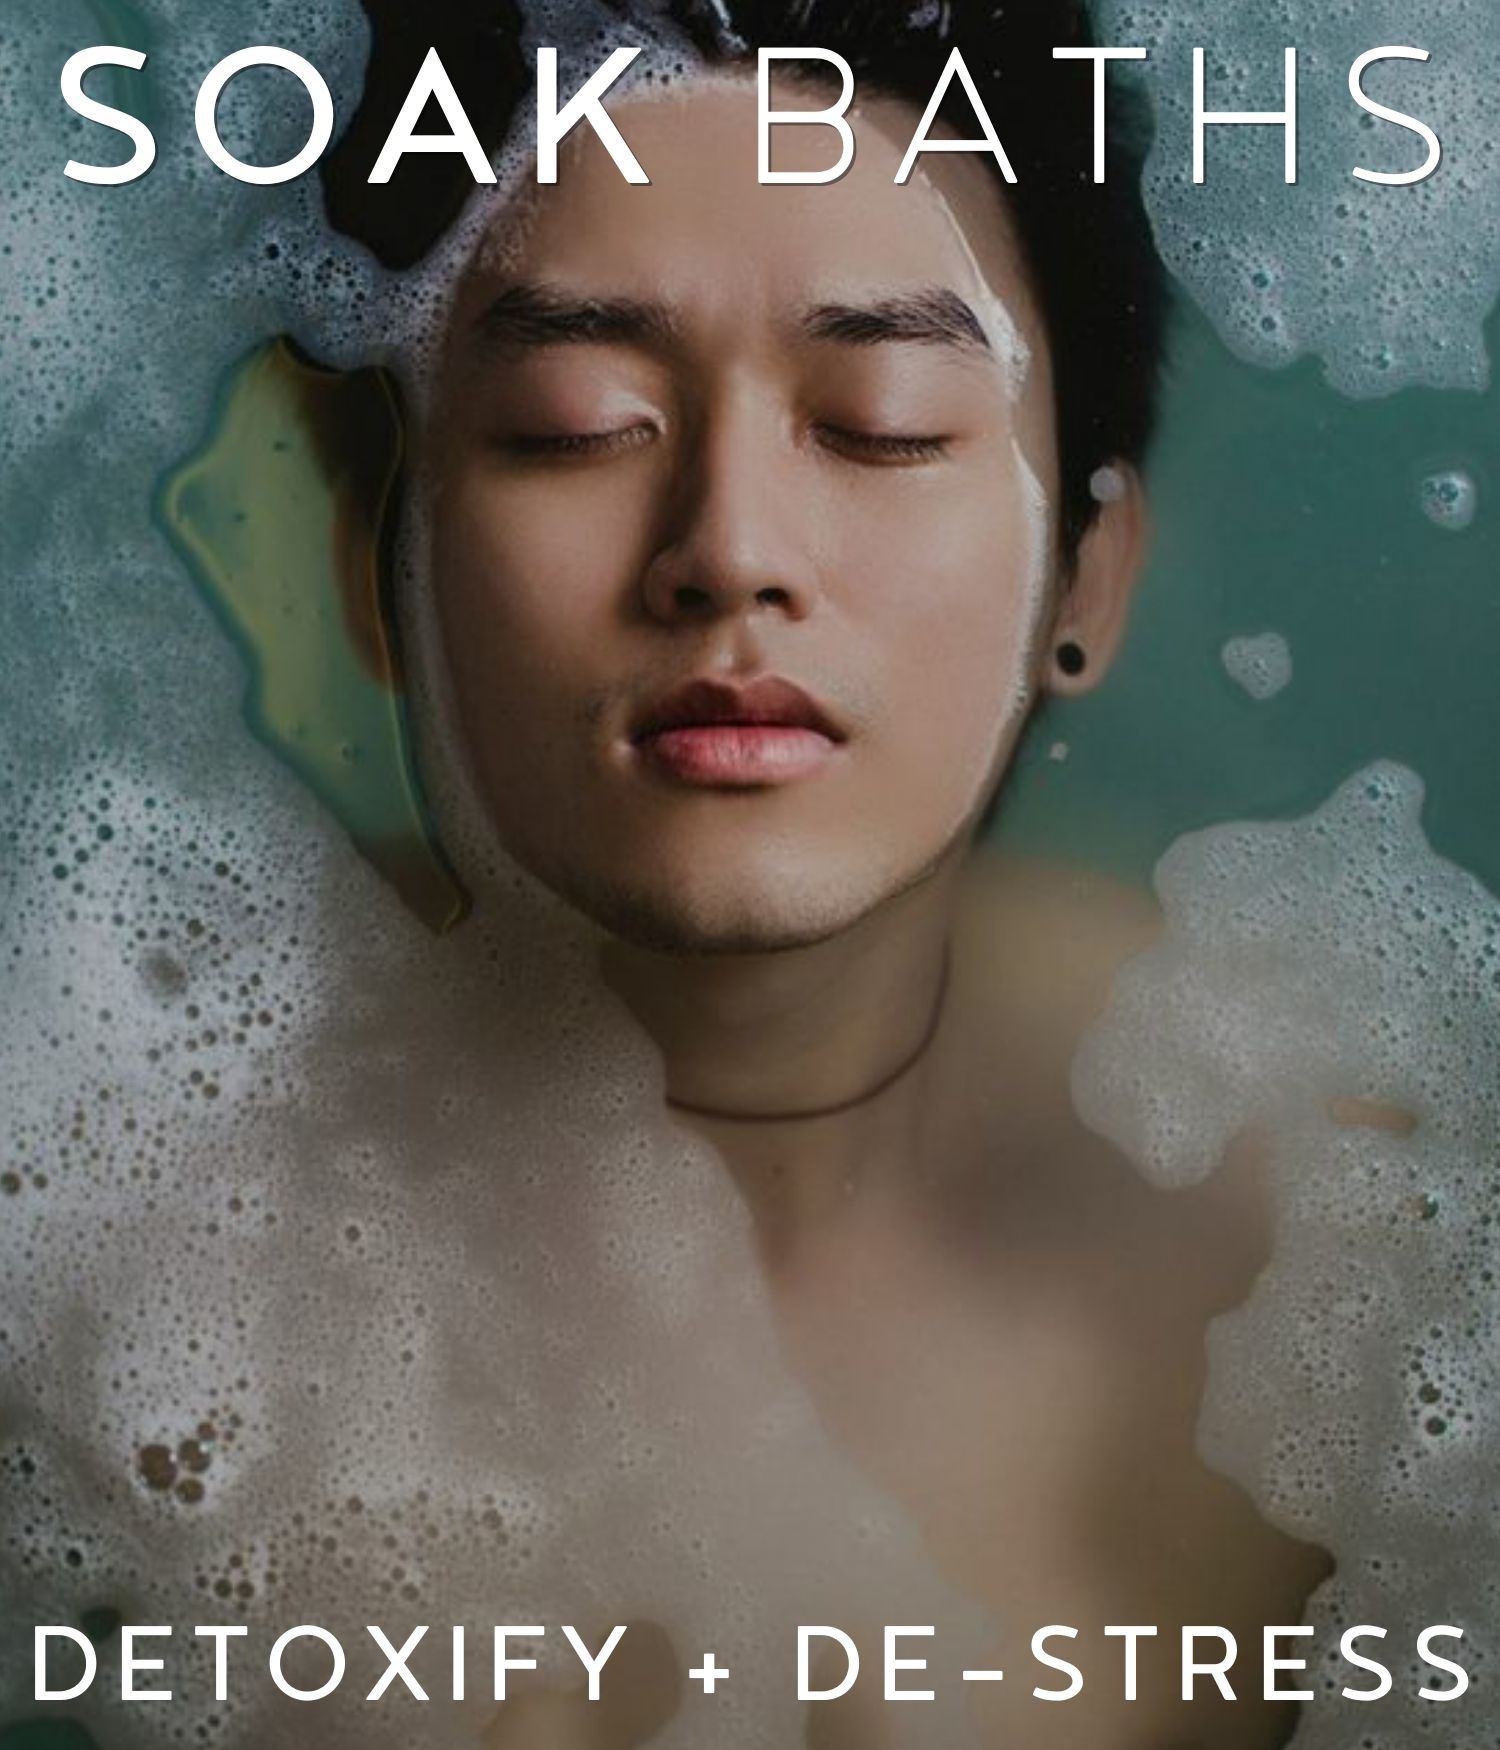 man in a bathtub having soak baths promoting detoxify + destress